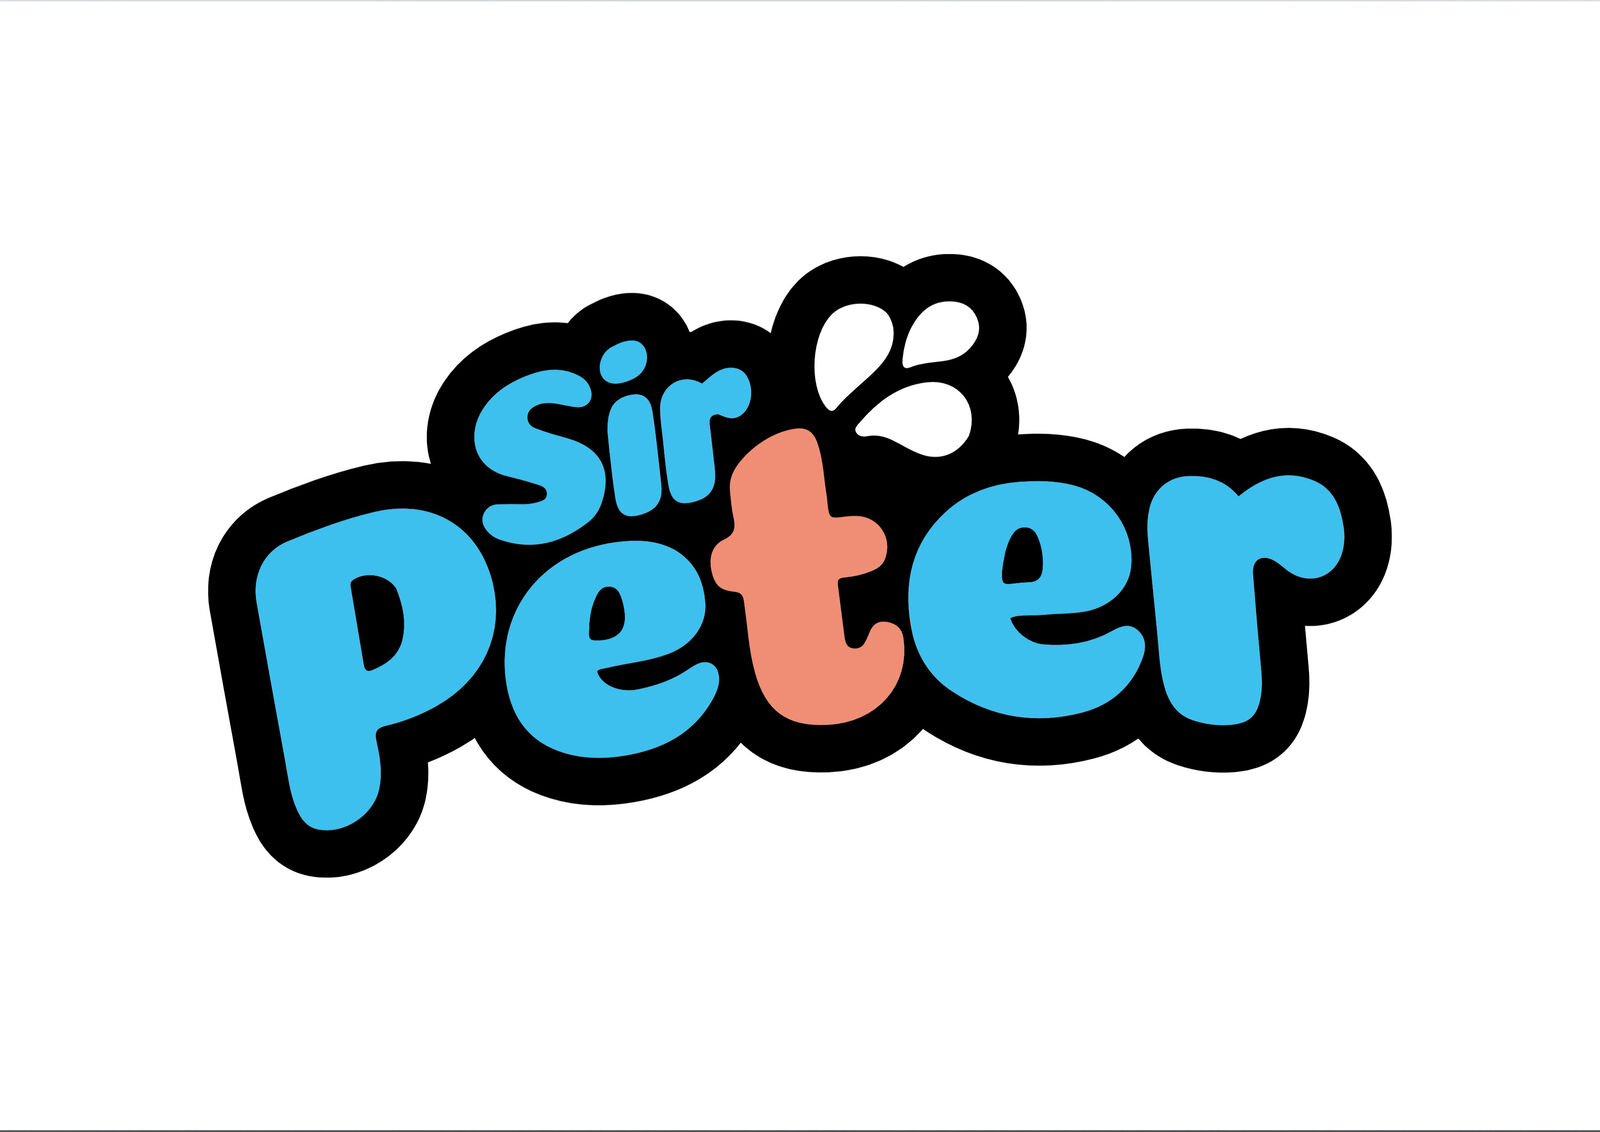 See Sir Peter Top 1% profile